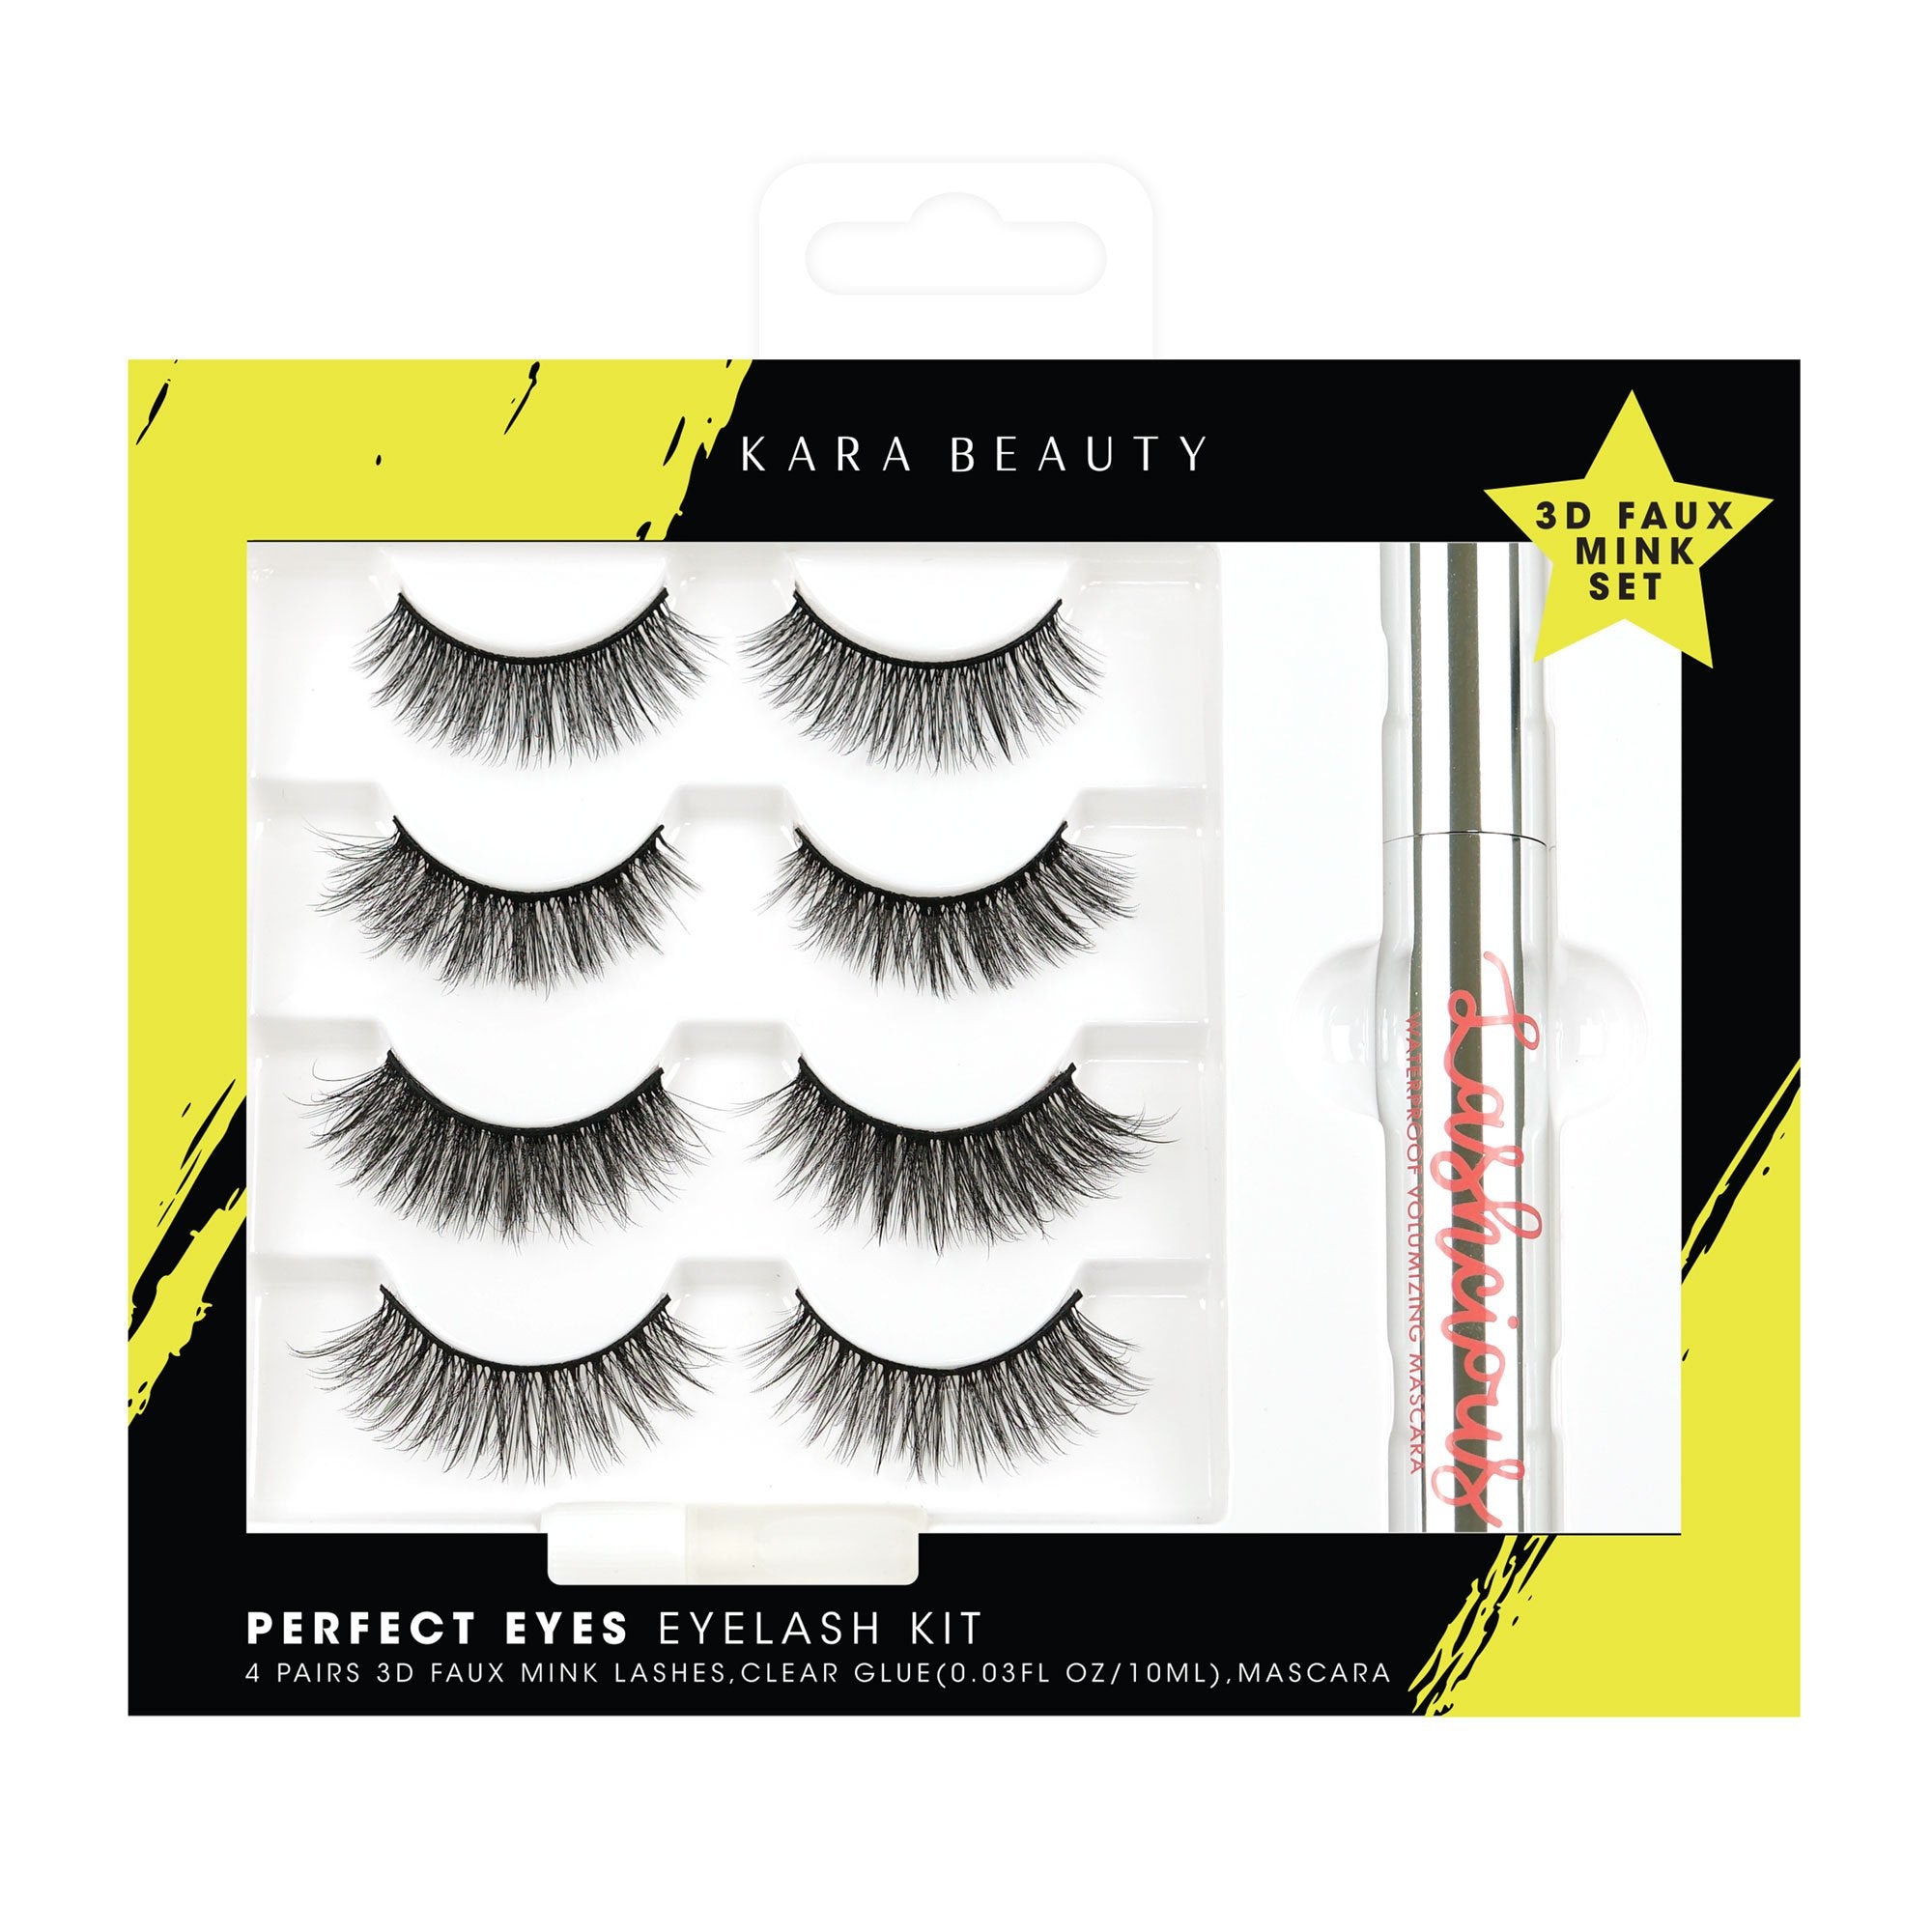 Value eyelash kit set with 4 pairs of lashes, mascara and clear glue